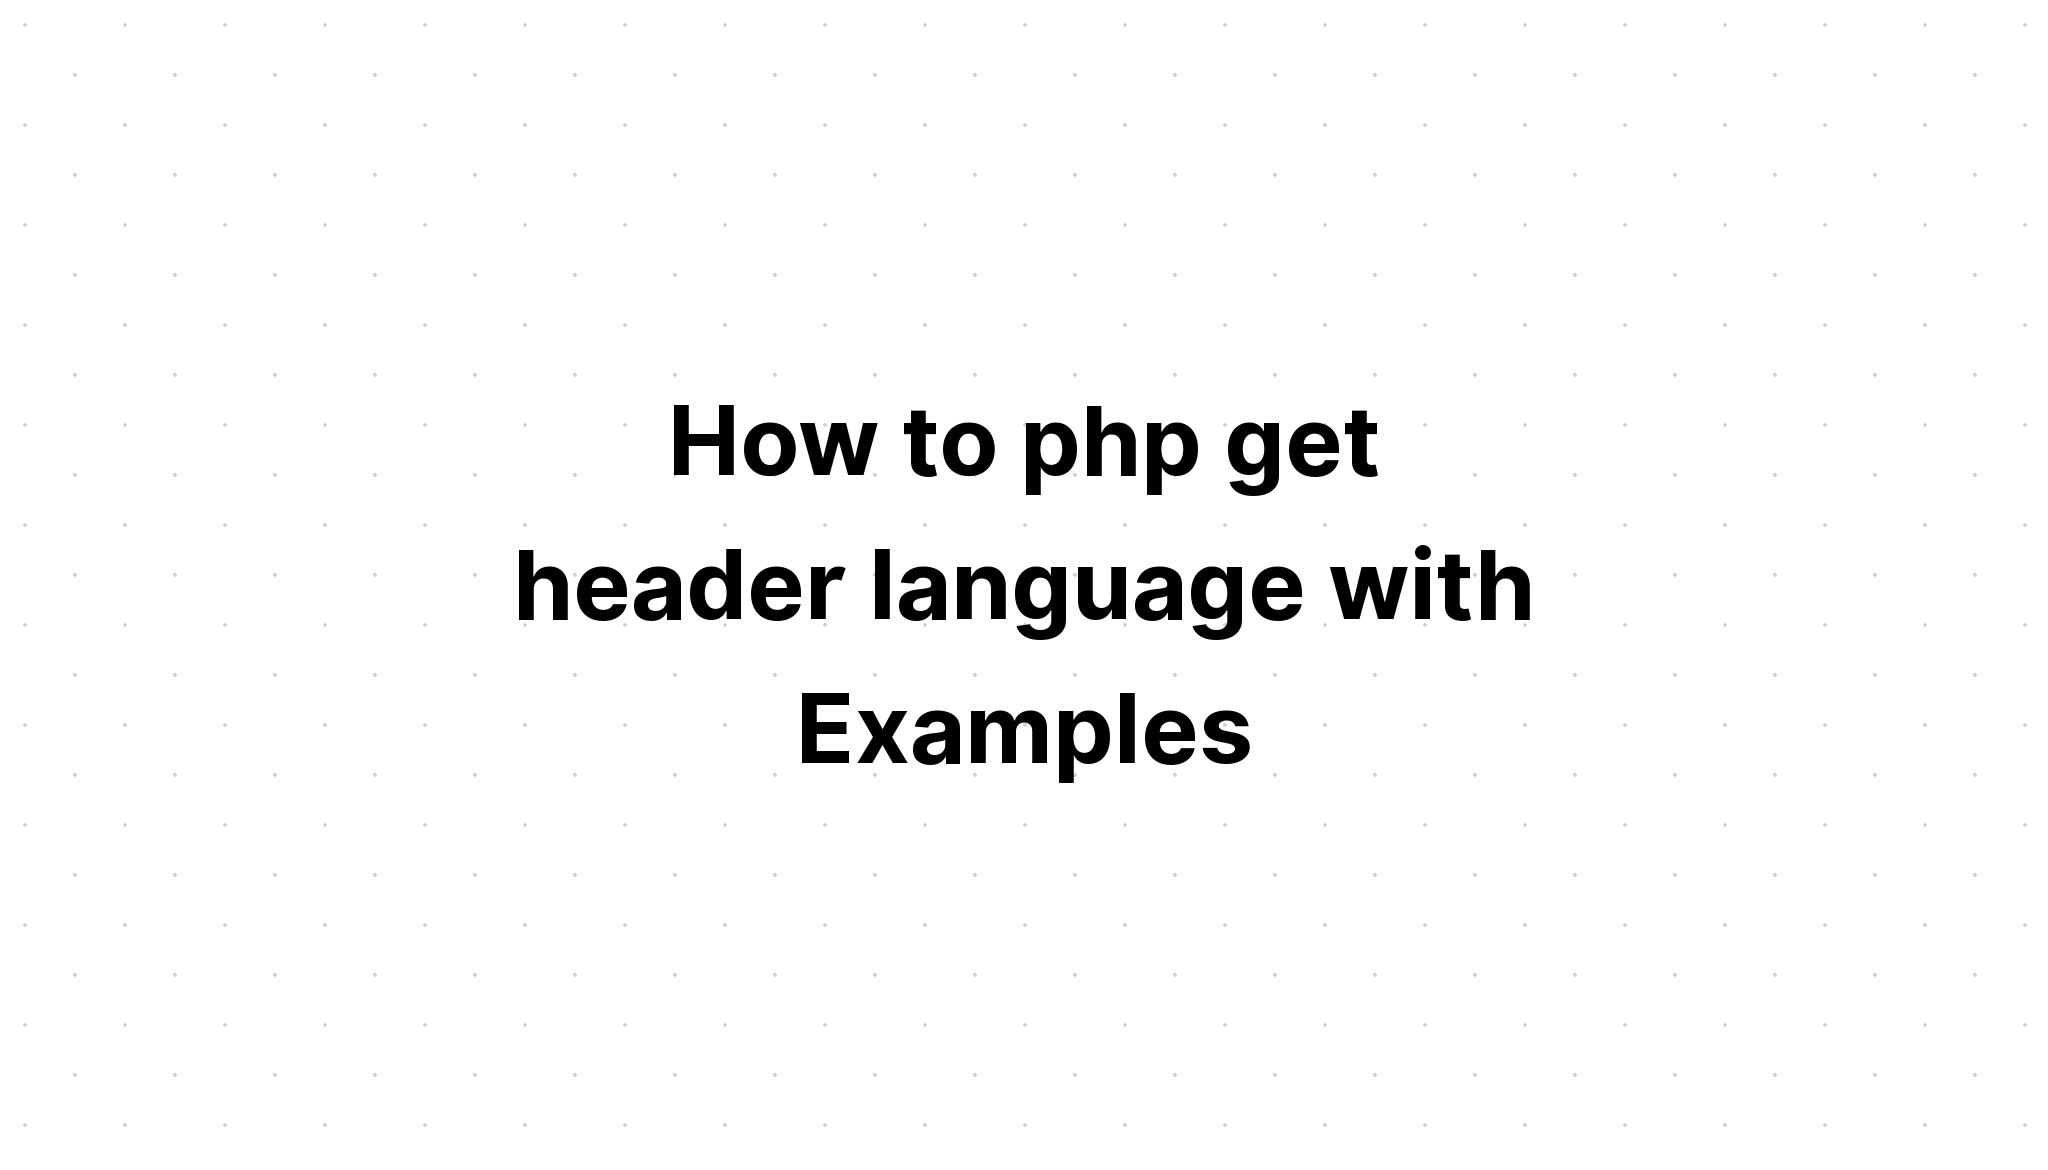 Cara php mendapatkan bahasa header dengan Contoh